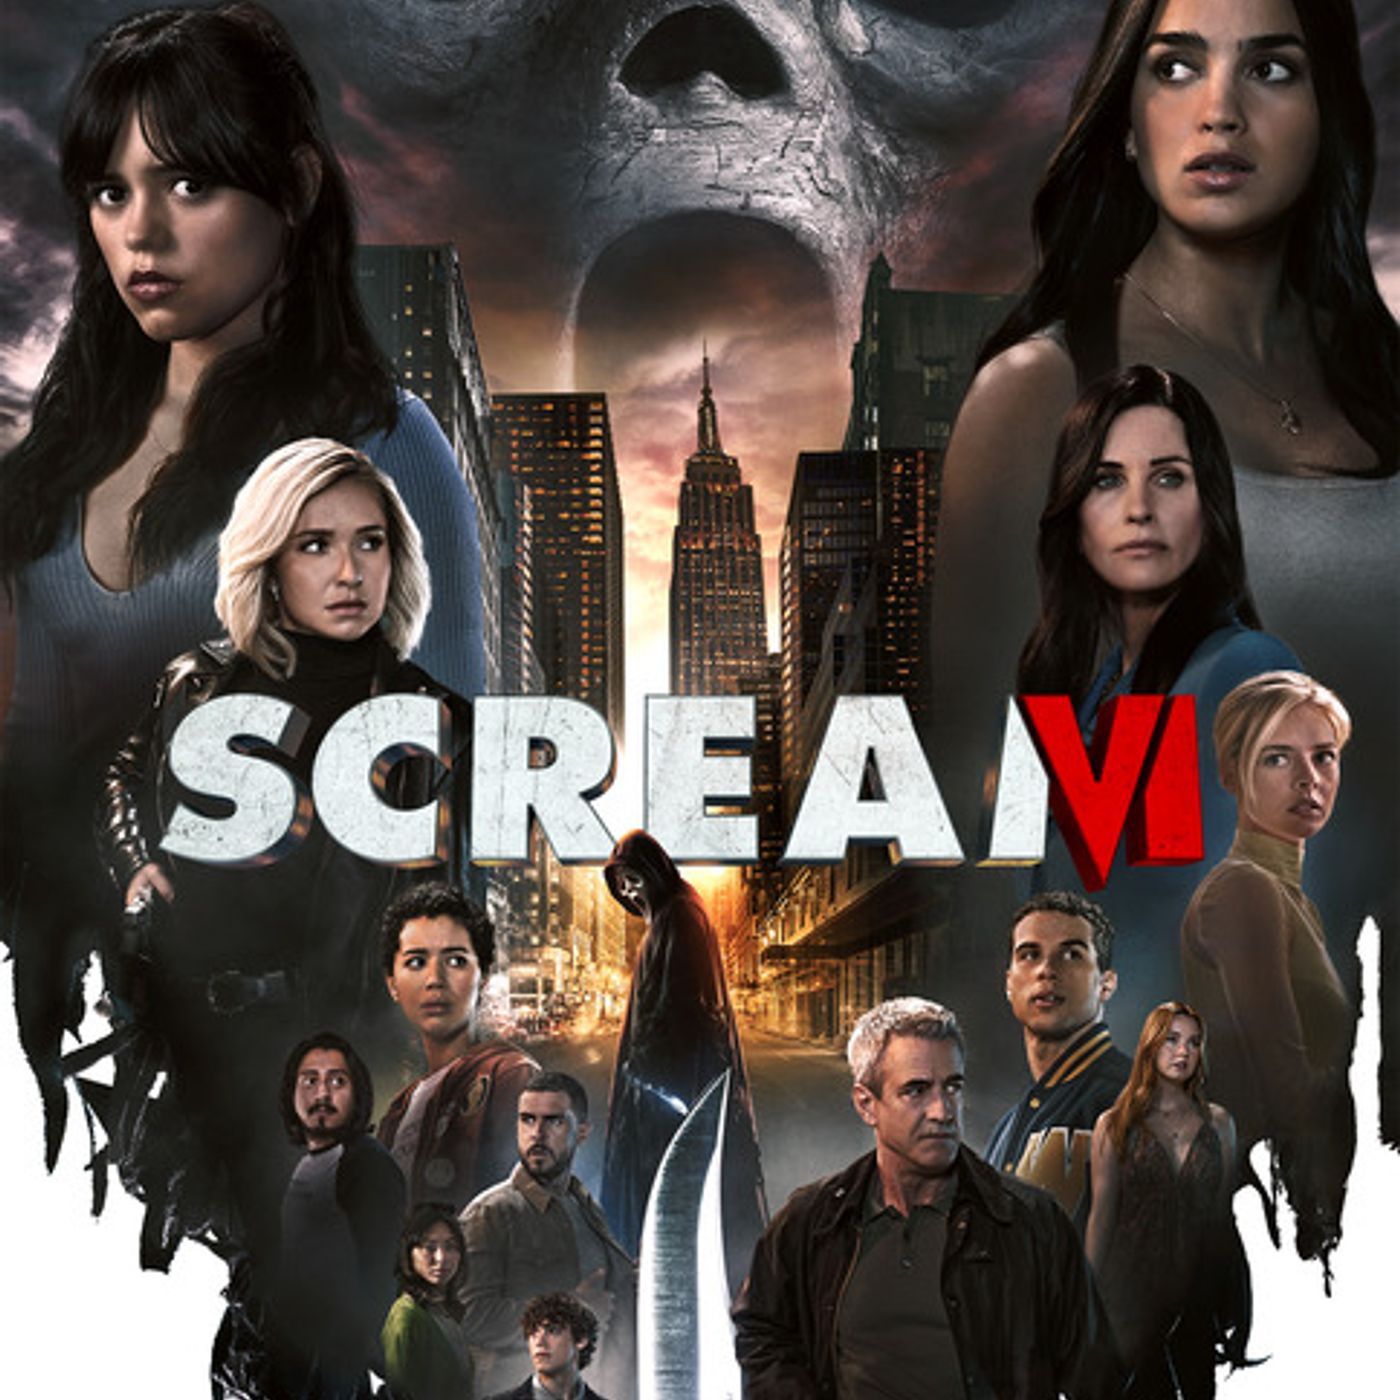 Scream VI (Podcast/Discussion)